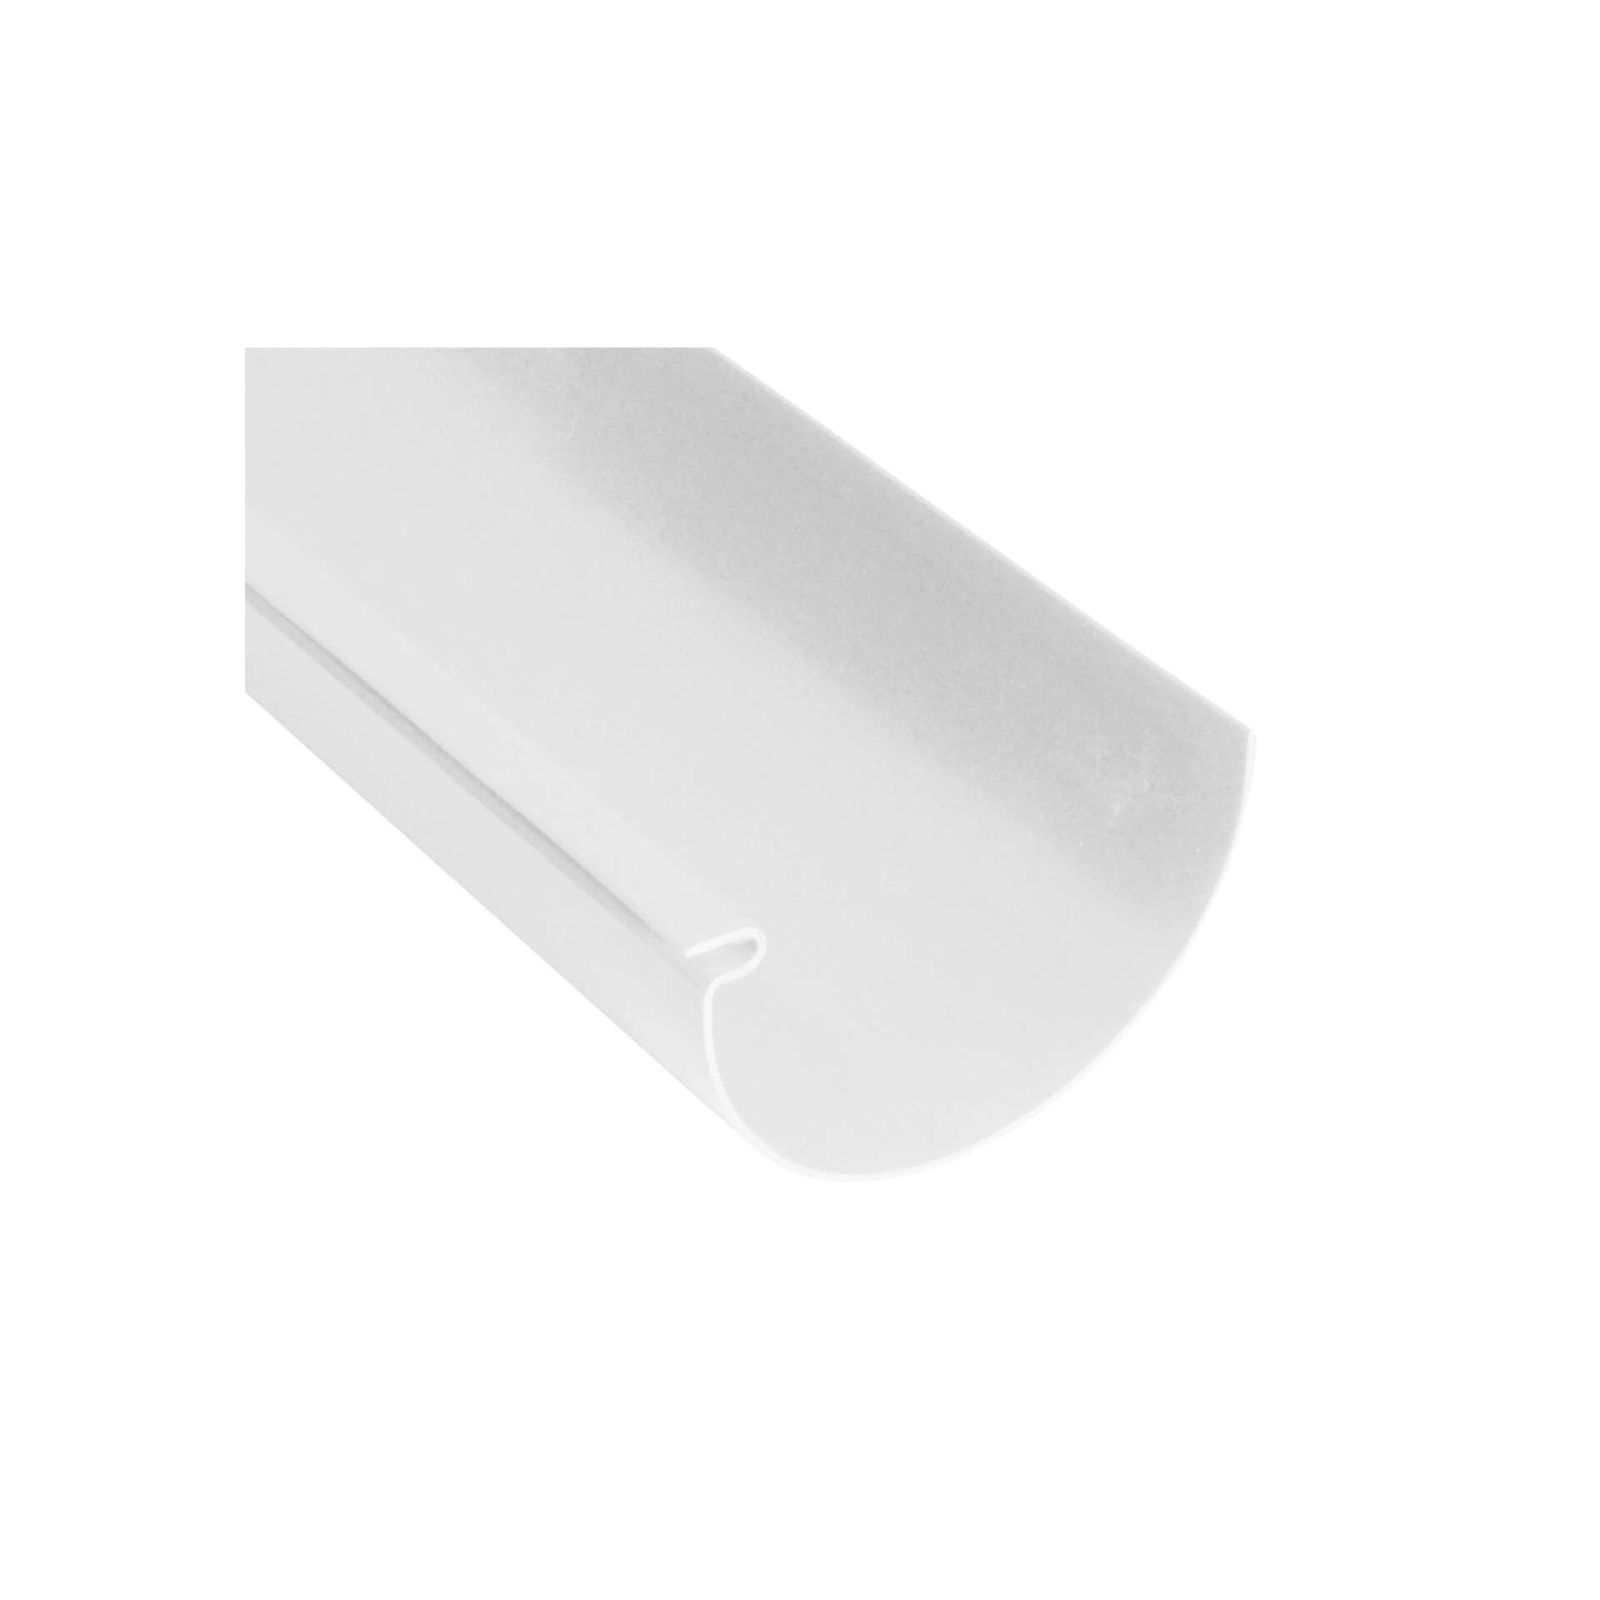 Kunststoff Dachrinnen Sparpaket 6 m | Ø 150/110 mm | Farbe Weiß